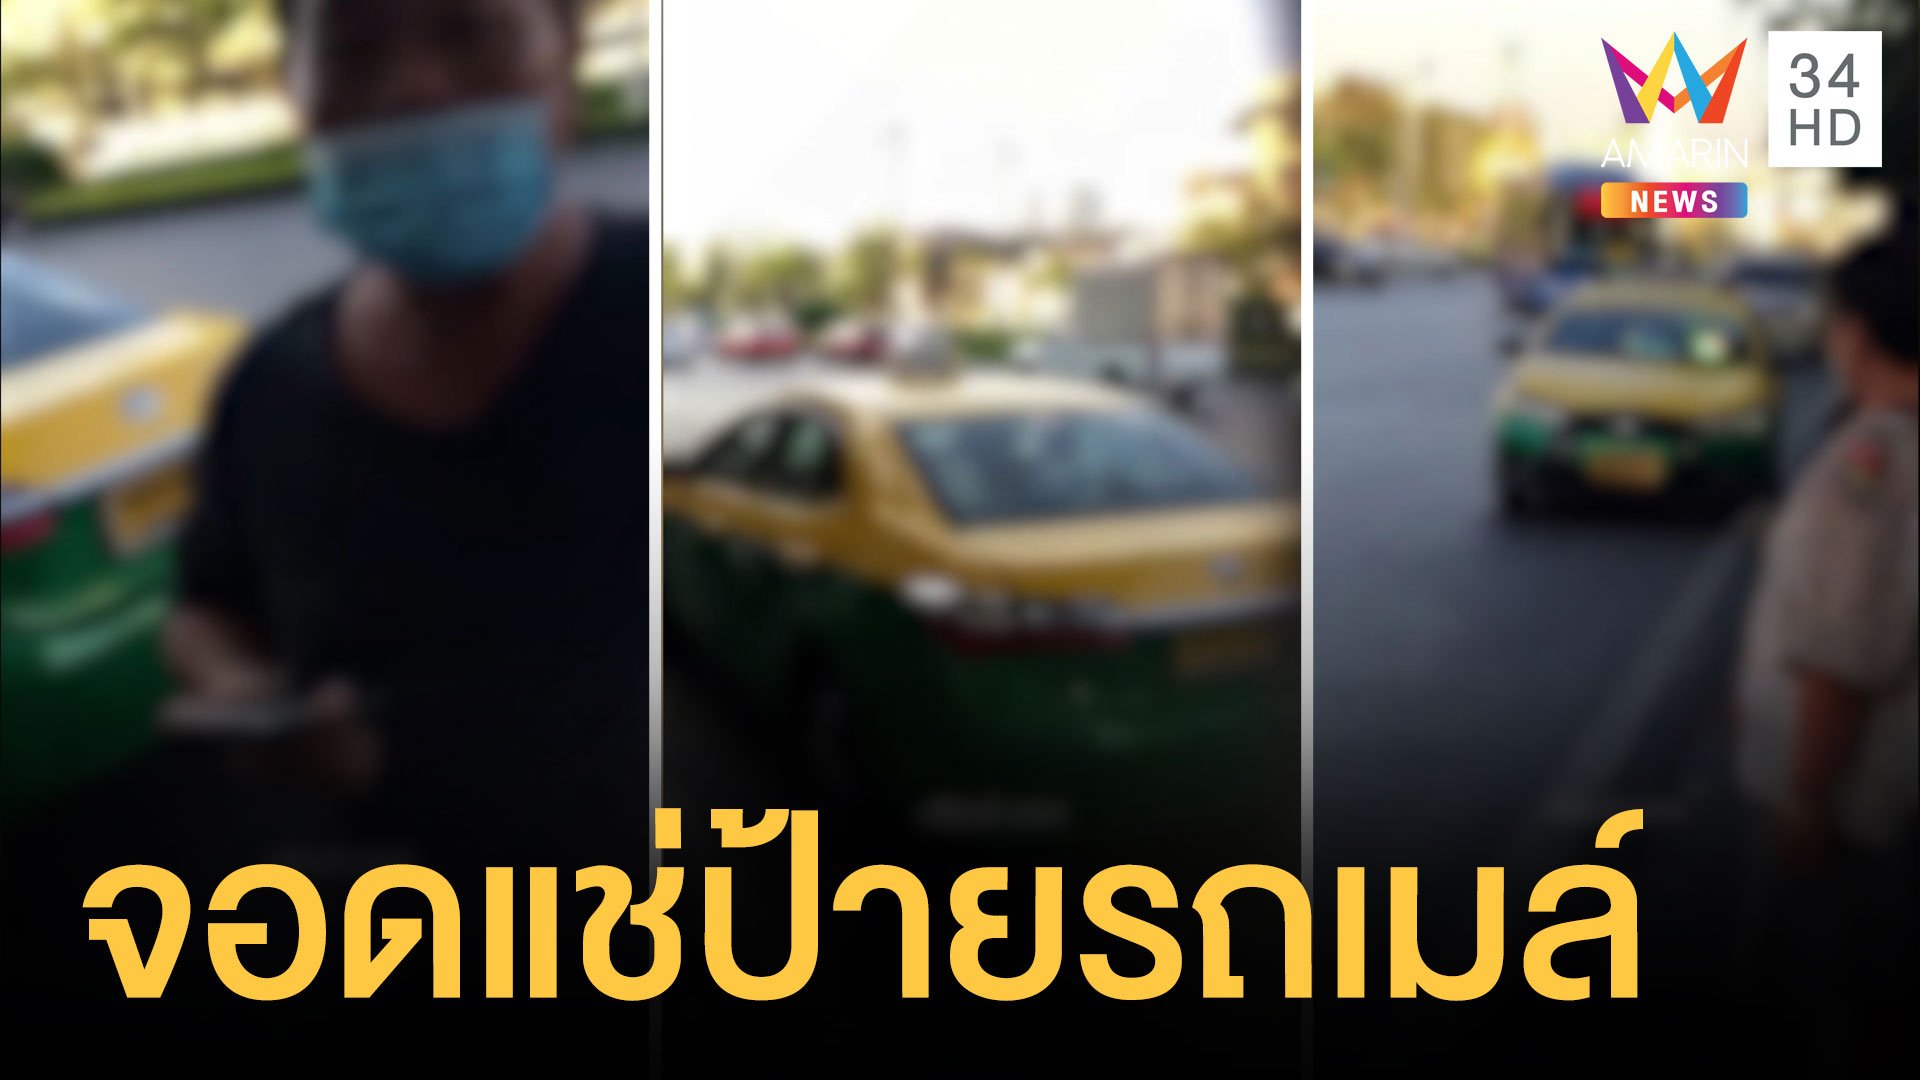 หนุ่มใจกล้าไล่แท็กซี่จอดแช่ตรงป้ายรถเมล์  | ข่าวอรุณอมรินทร์ | 4 ม.ค. 64 | AMARIN TVHD34